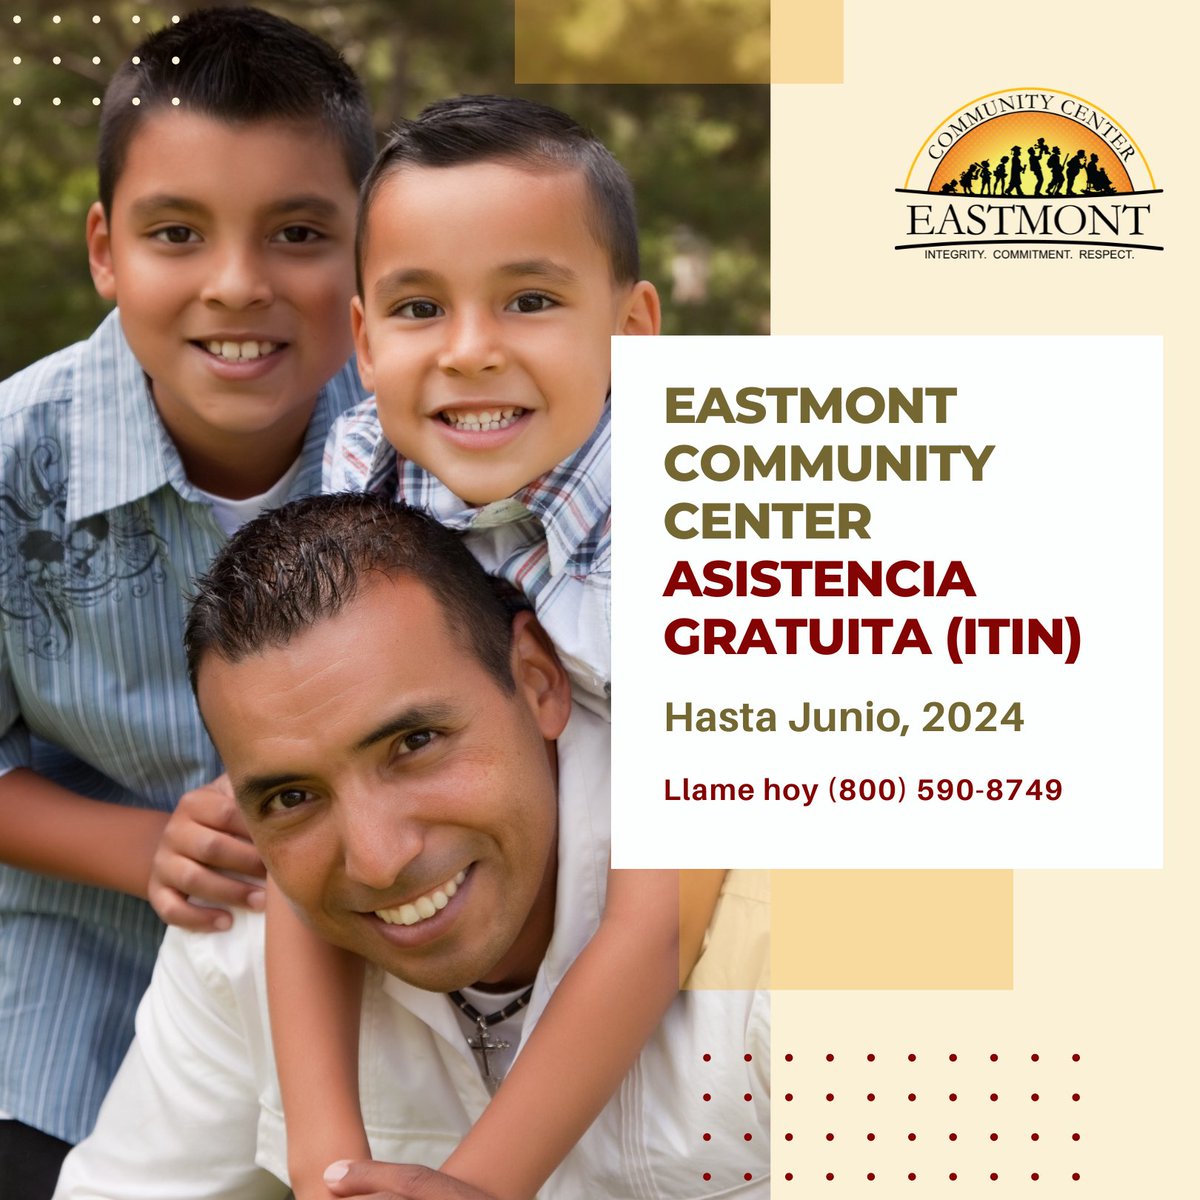 Eastmont Community Center ofrece asistencia GRATUITA para su solicitud de ITIN y la preparación de impuestos. LLame al 800-590-8749 para más información. ow.ly/UQKa50PT3lZ